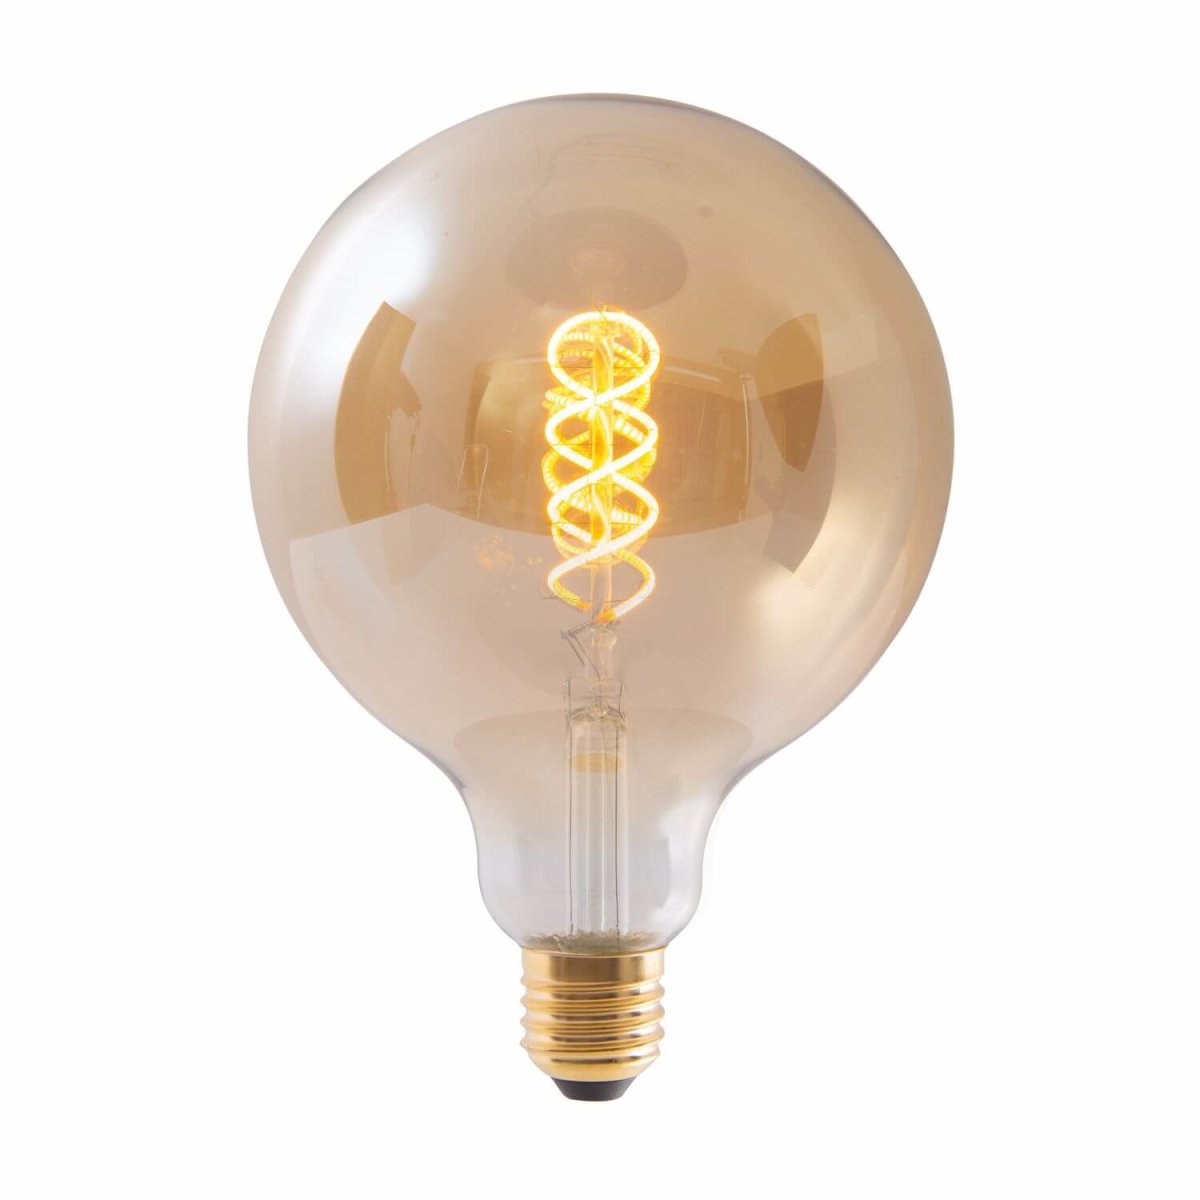 LAMPE LED E27 41304 Näve dimmbar Ø12,5cm Warmweiss amber Leuchtmittel